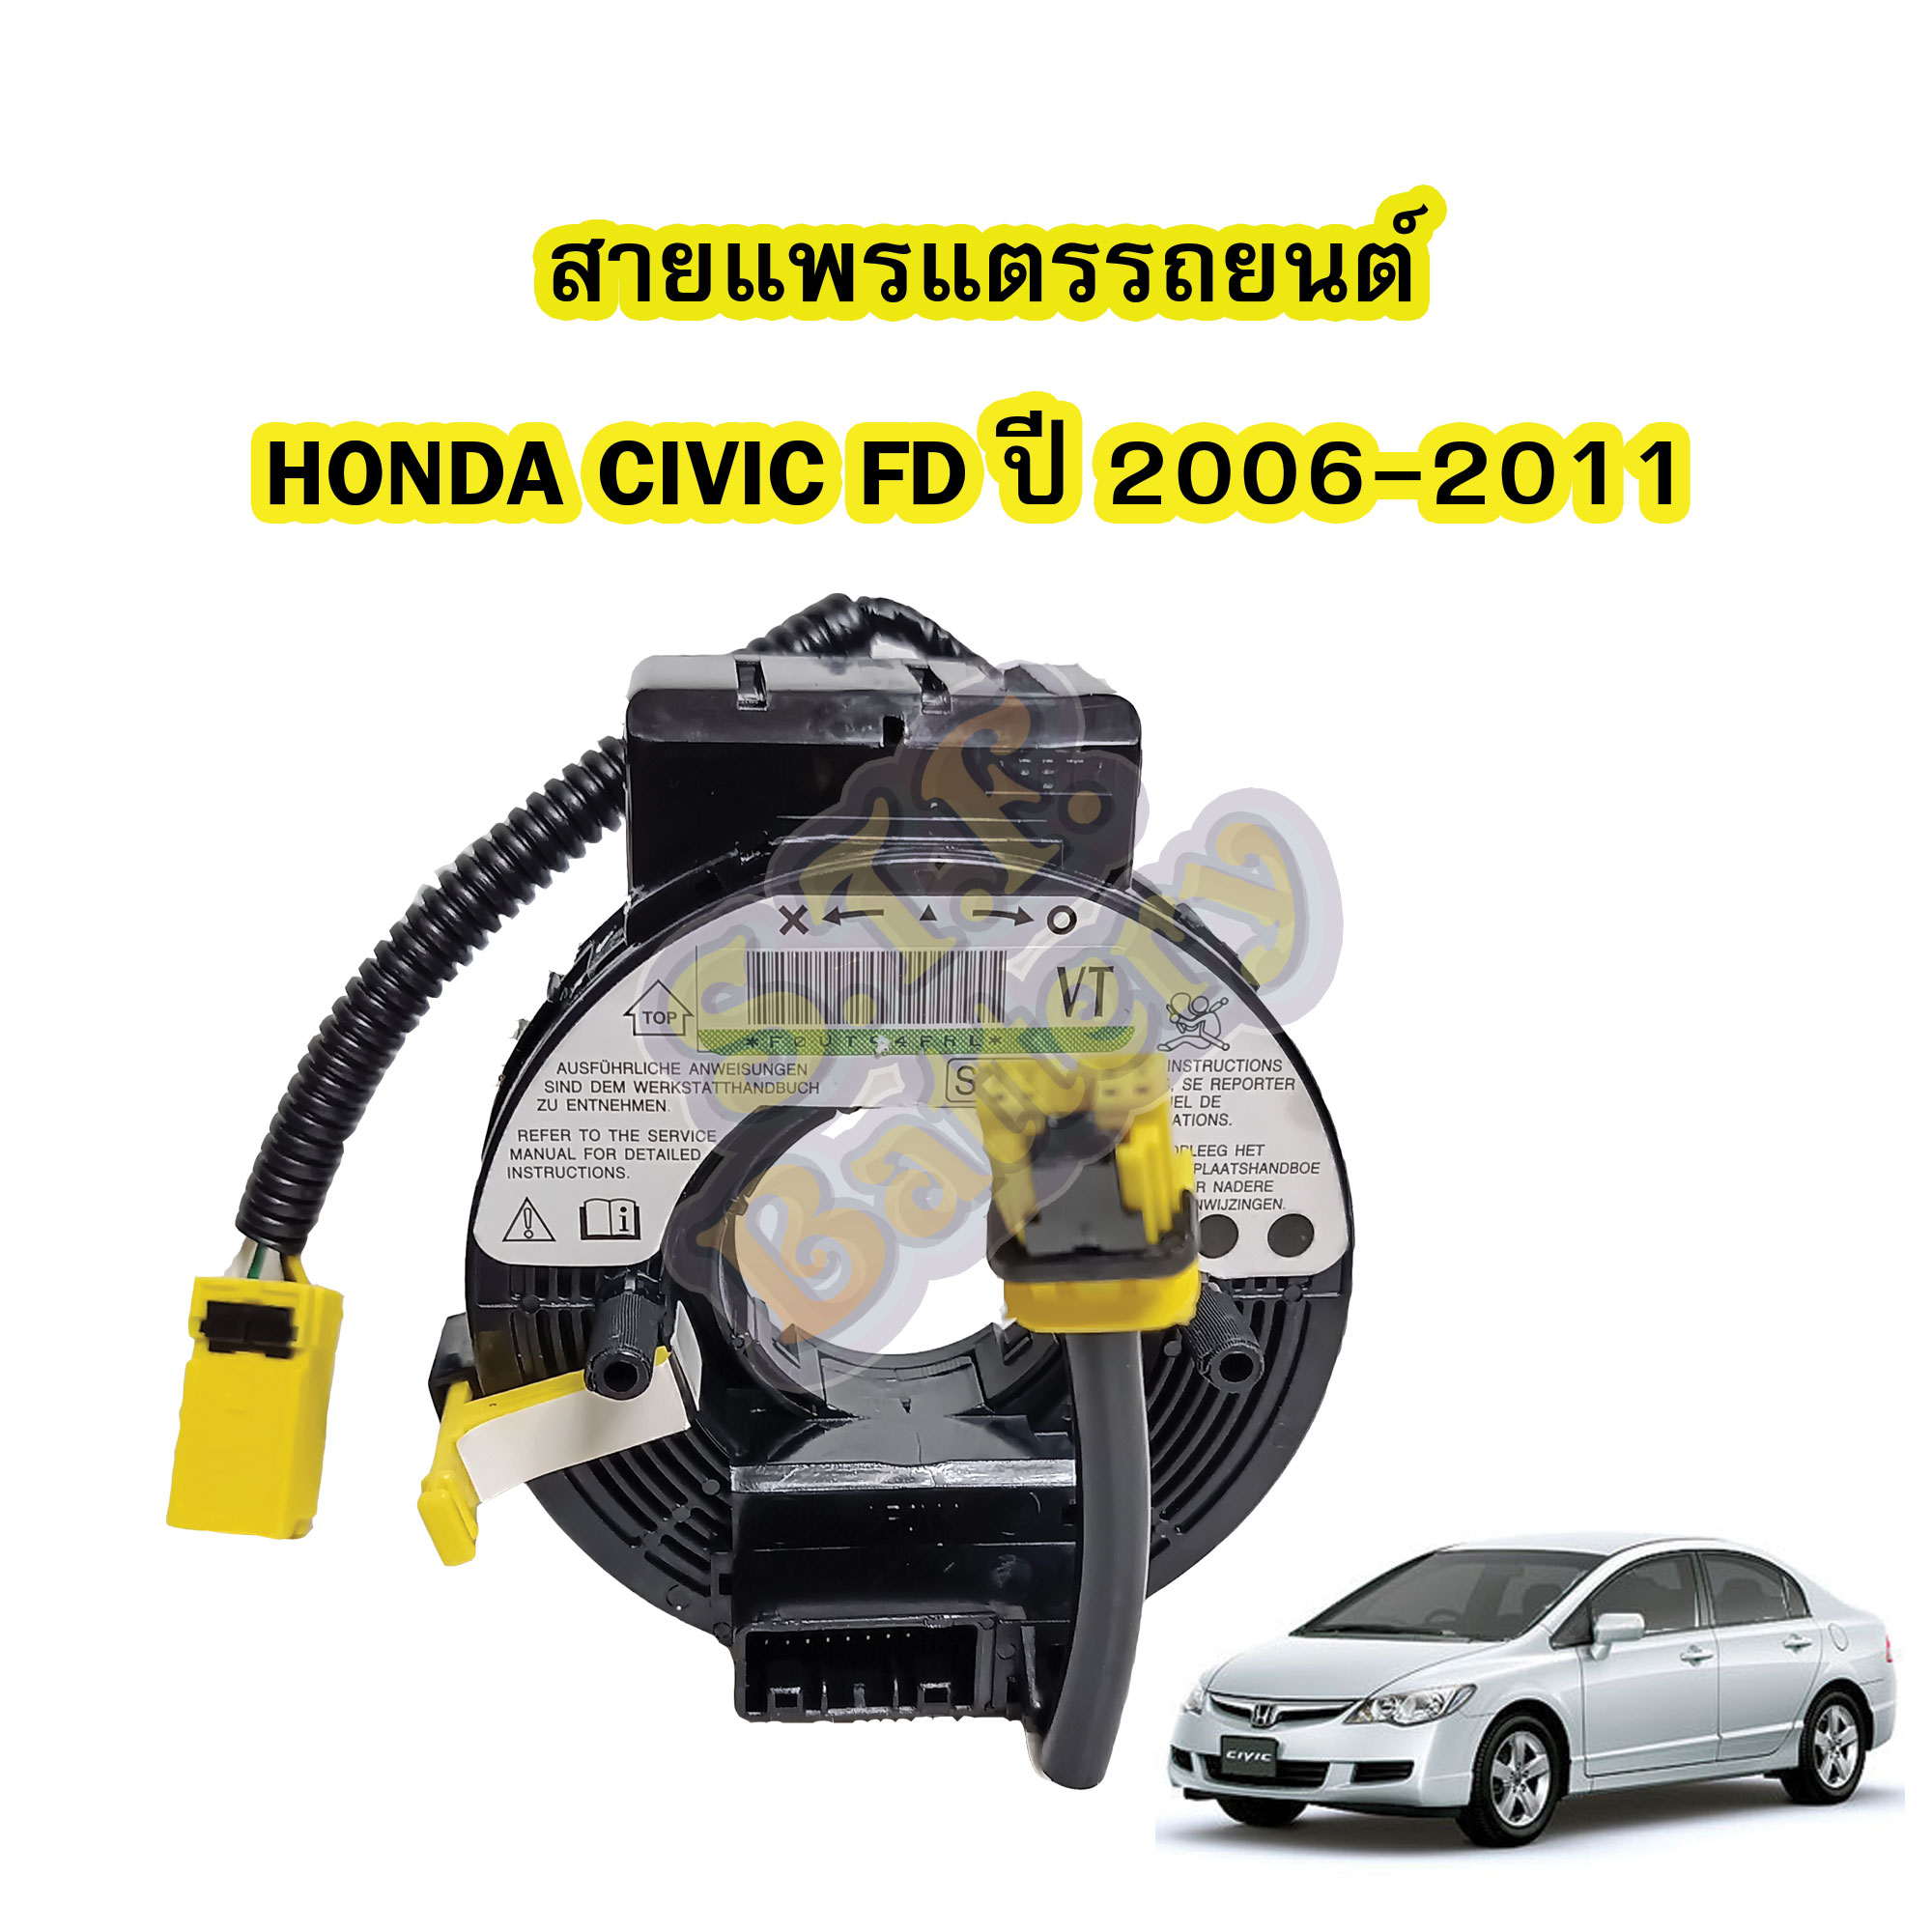 สายแพรแตร/ลานคอพวงมาลัย สไปร่อน สำหรับรถยนต์ฮอนด้า ซีวิค เอฟดี(HONDA CIVIC FD) ปี2006-2011 รุ่นนางฟ้า/ไฟโดนัท